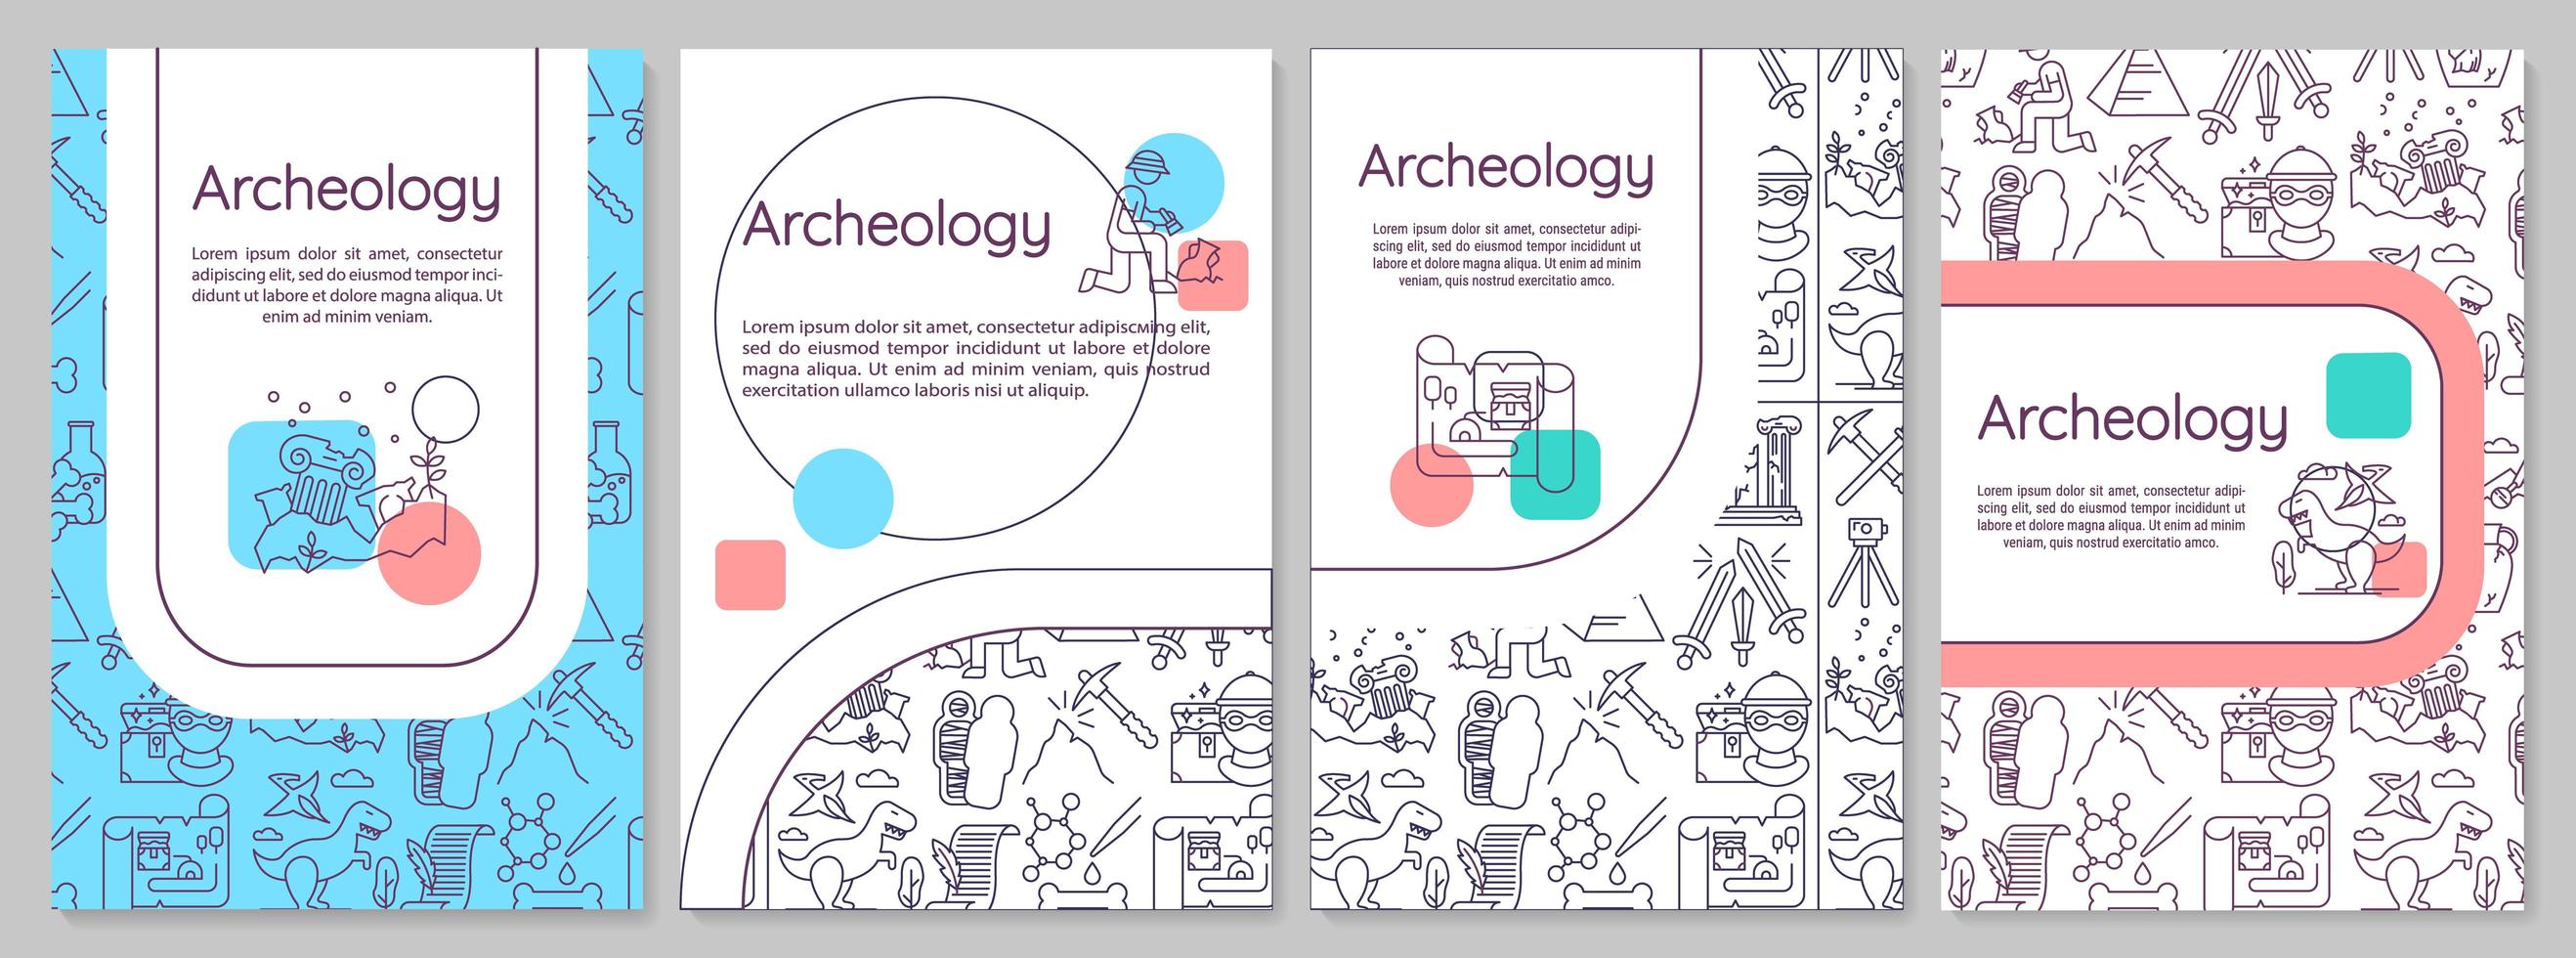 plantilla de folleto de arqueología. paleontología e historia. folleto, folleto, impresión de folletos, diseño de portada con iconos lineales. vector